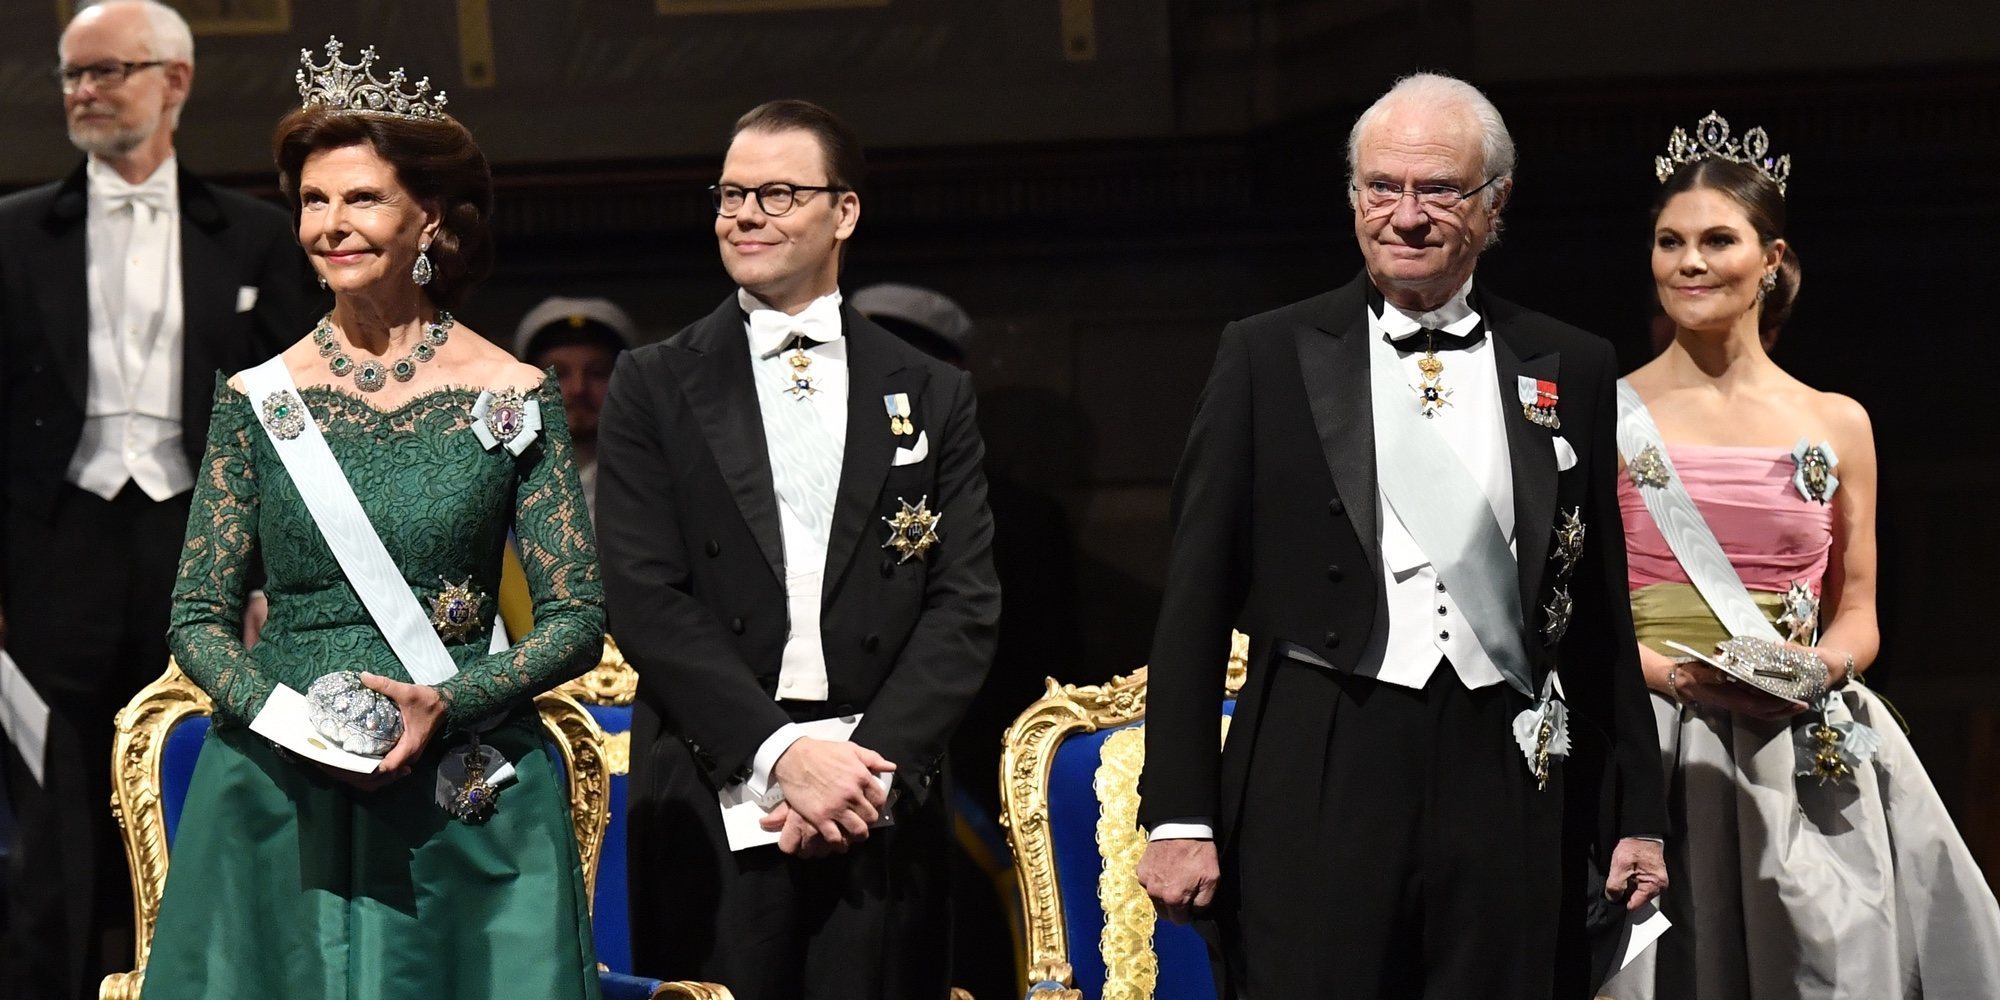 La Familia Real Sueca, entre diseños inapropiados y looks reciclados: así han sido los Premios Nobel 2018